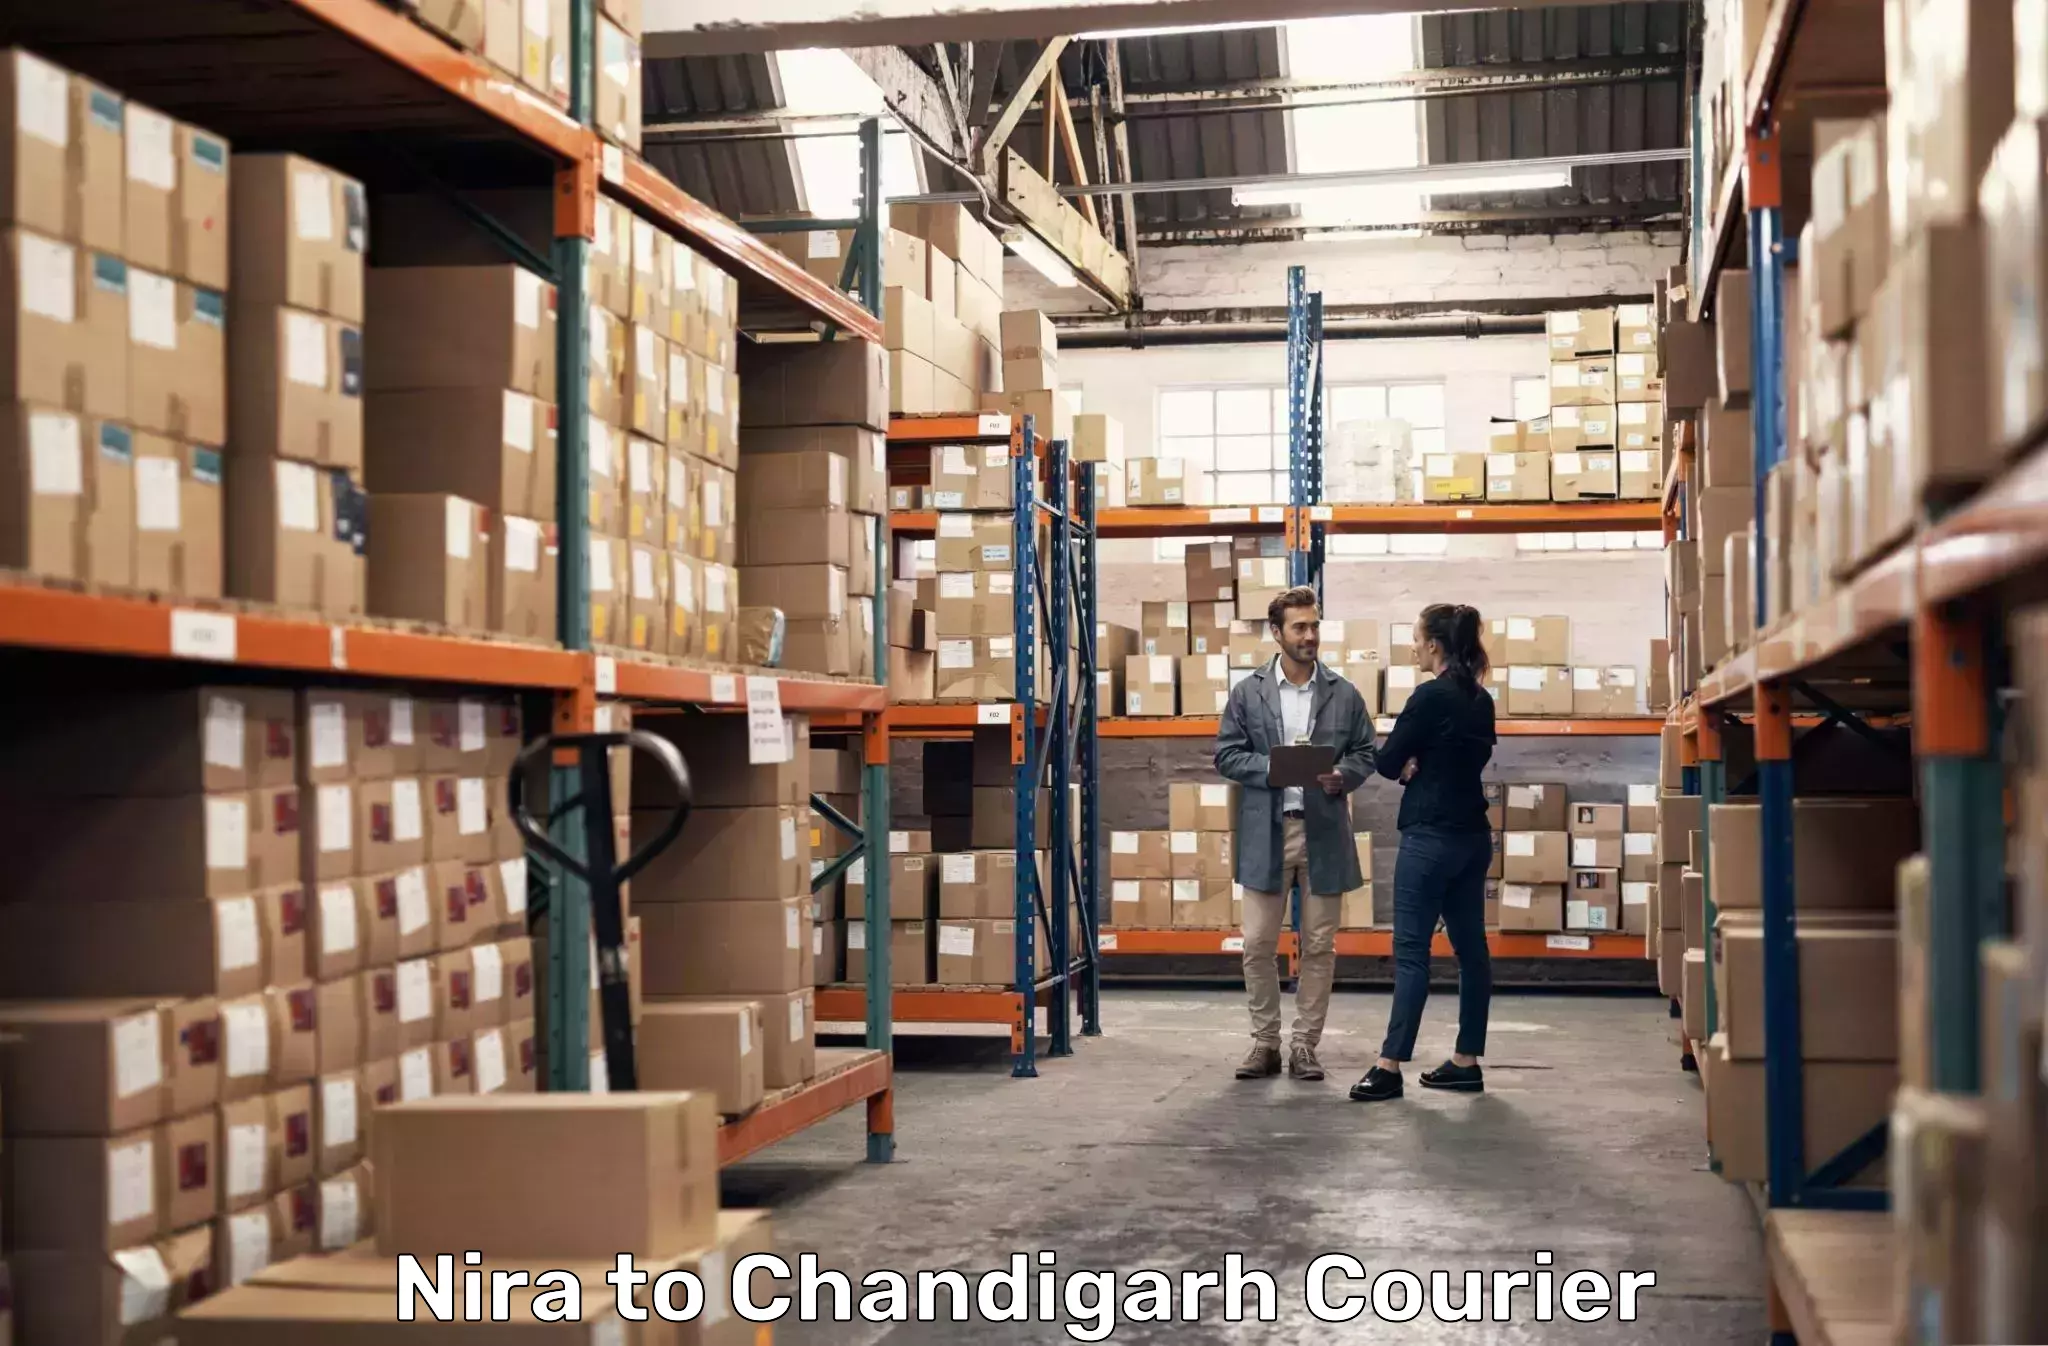 Seamless shipping service Nira to Chandigarh